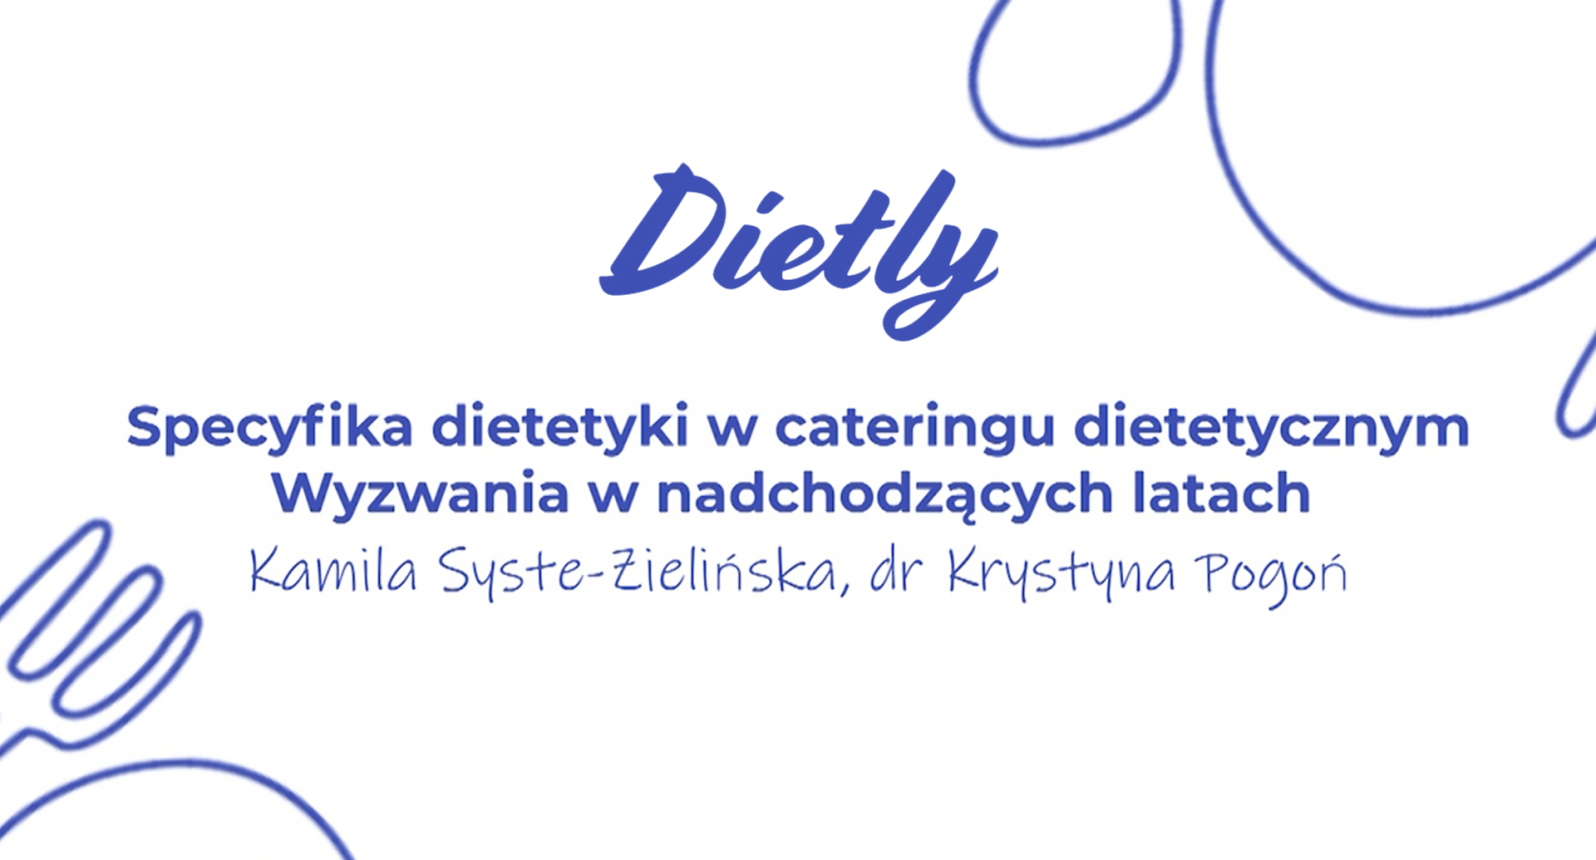 Dietetyka - specyfika dietetyki w cateringu dietetycznym. Wyzwania nadchodzących latach